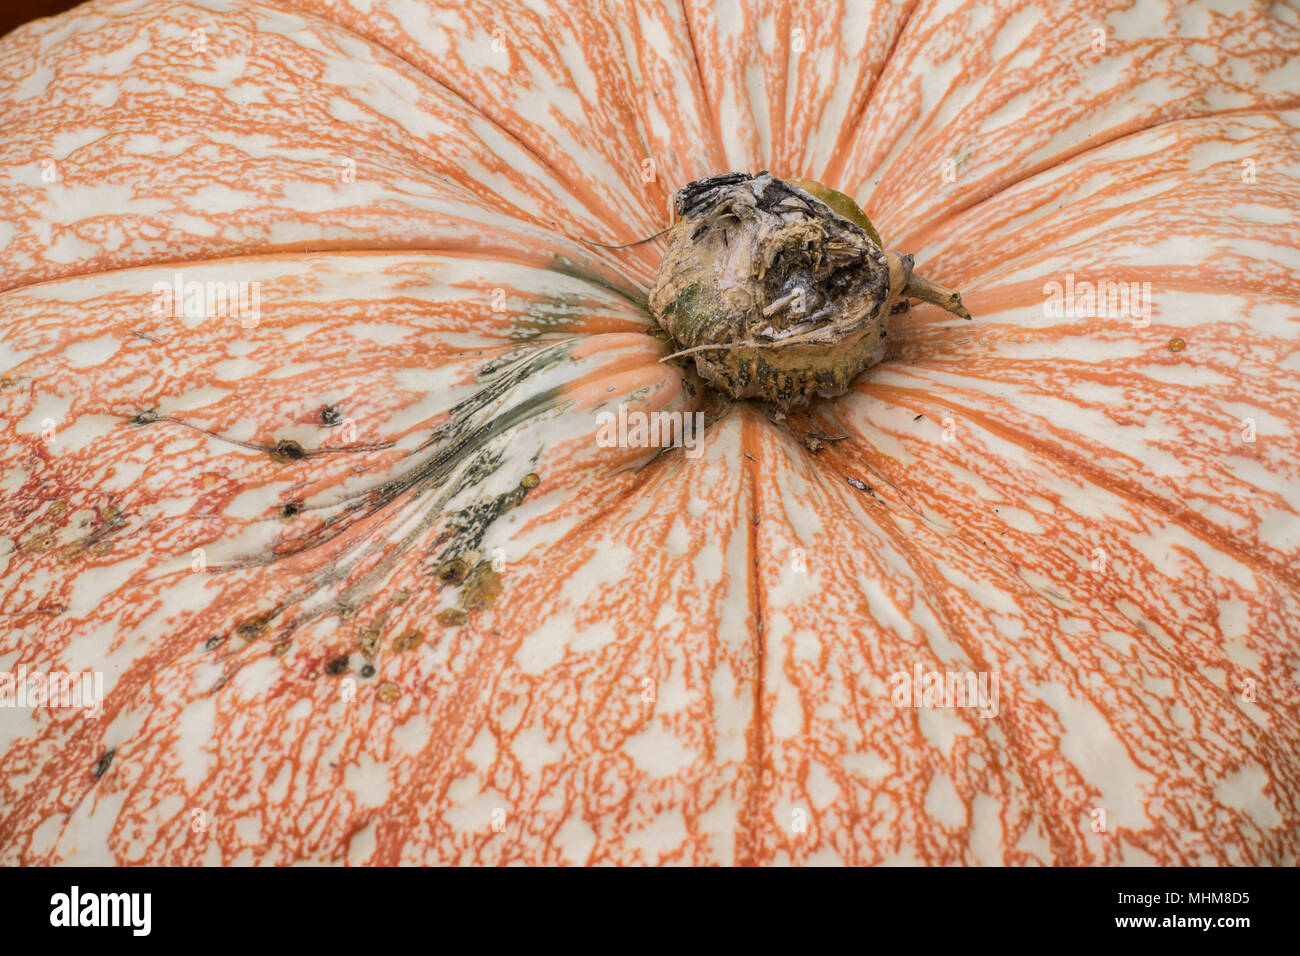 Herbst Kürbisse in einem kürbisfeld. Aschenputtel und traditionellen Sorten sind ideal zum Backen und dekorieren in der kühlen Jahreszeit. Kürbisse wachsen Stockfoto